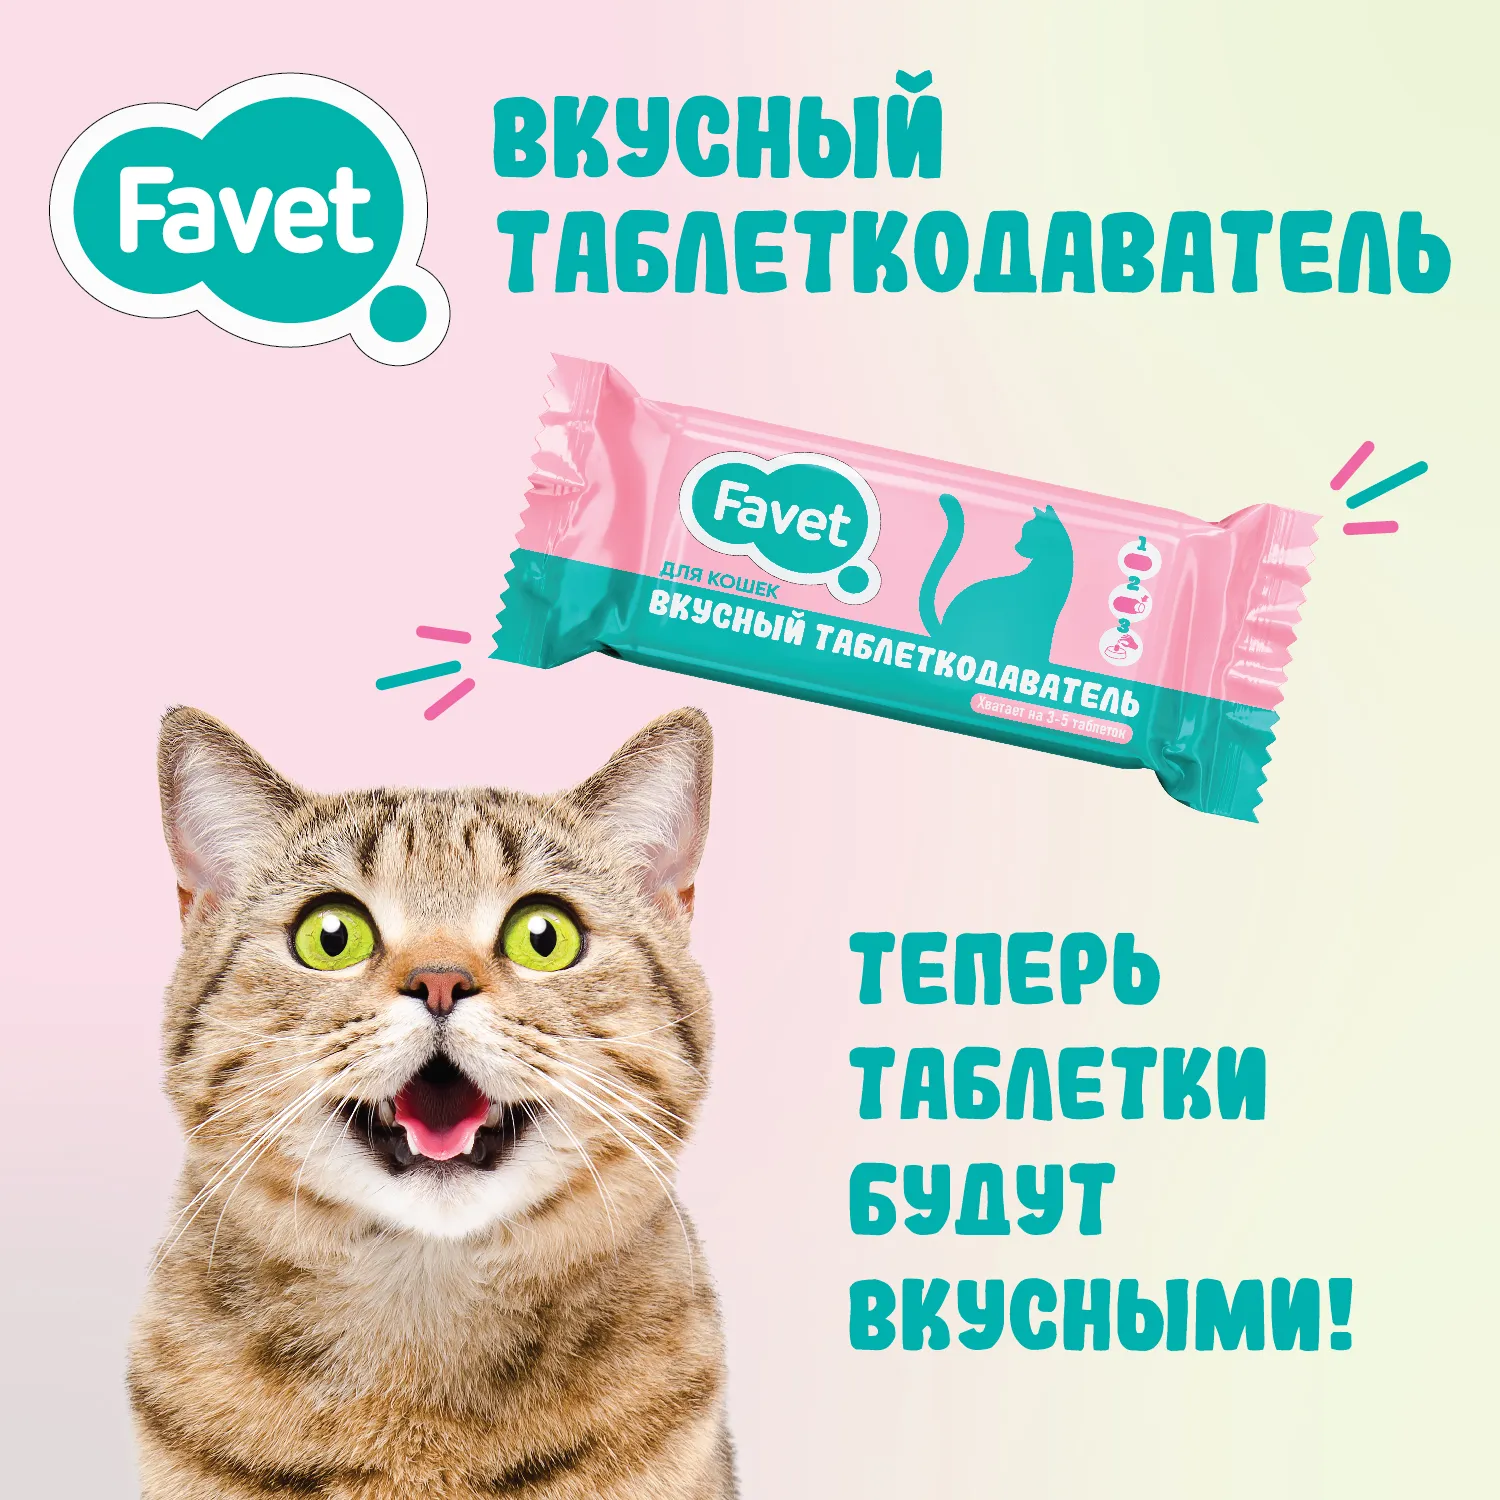 Favet Вкусный таблеткодаватель для кошек (12 шт.), ПЭТ-банка